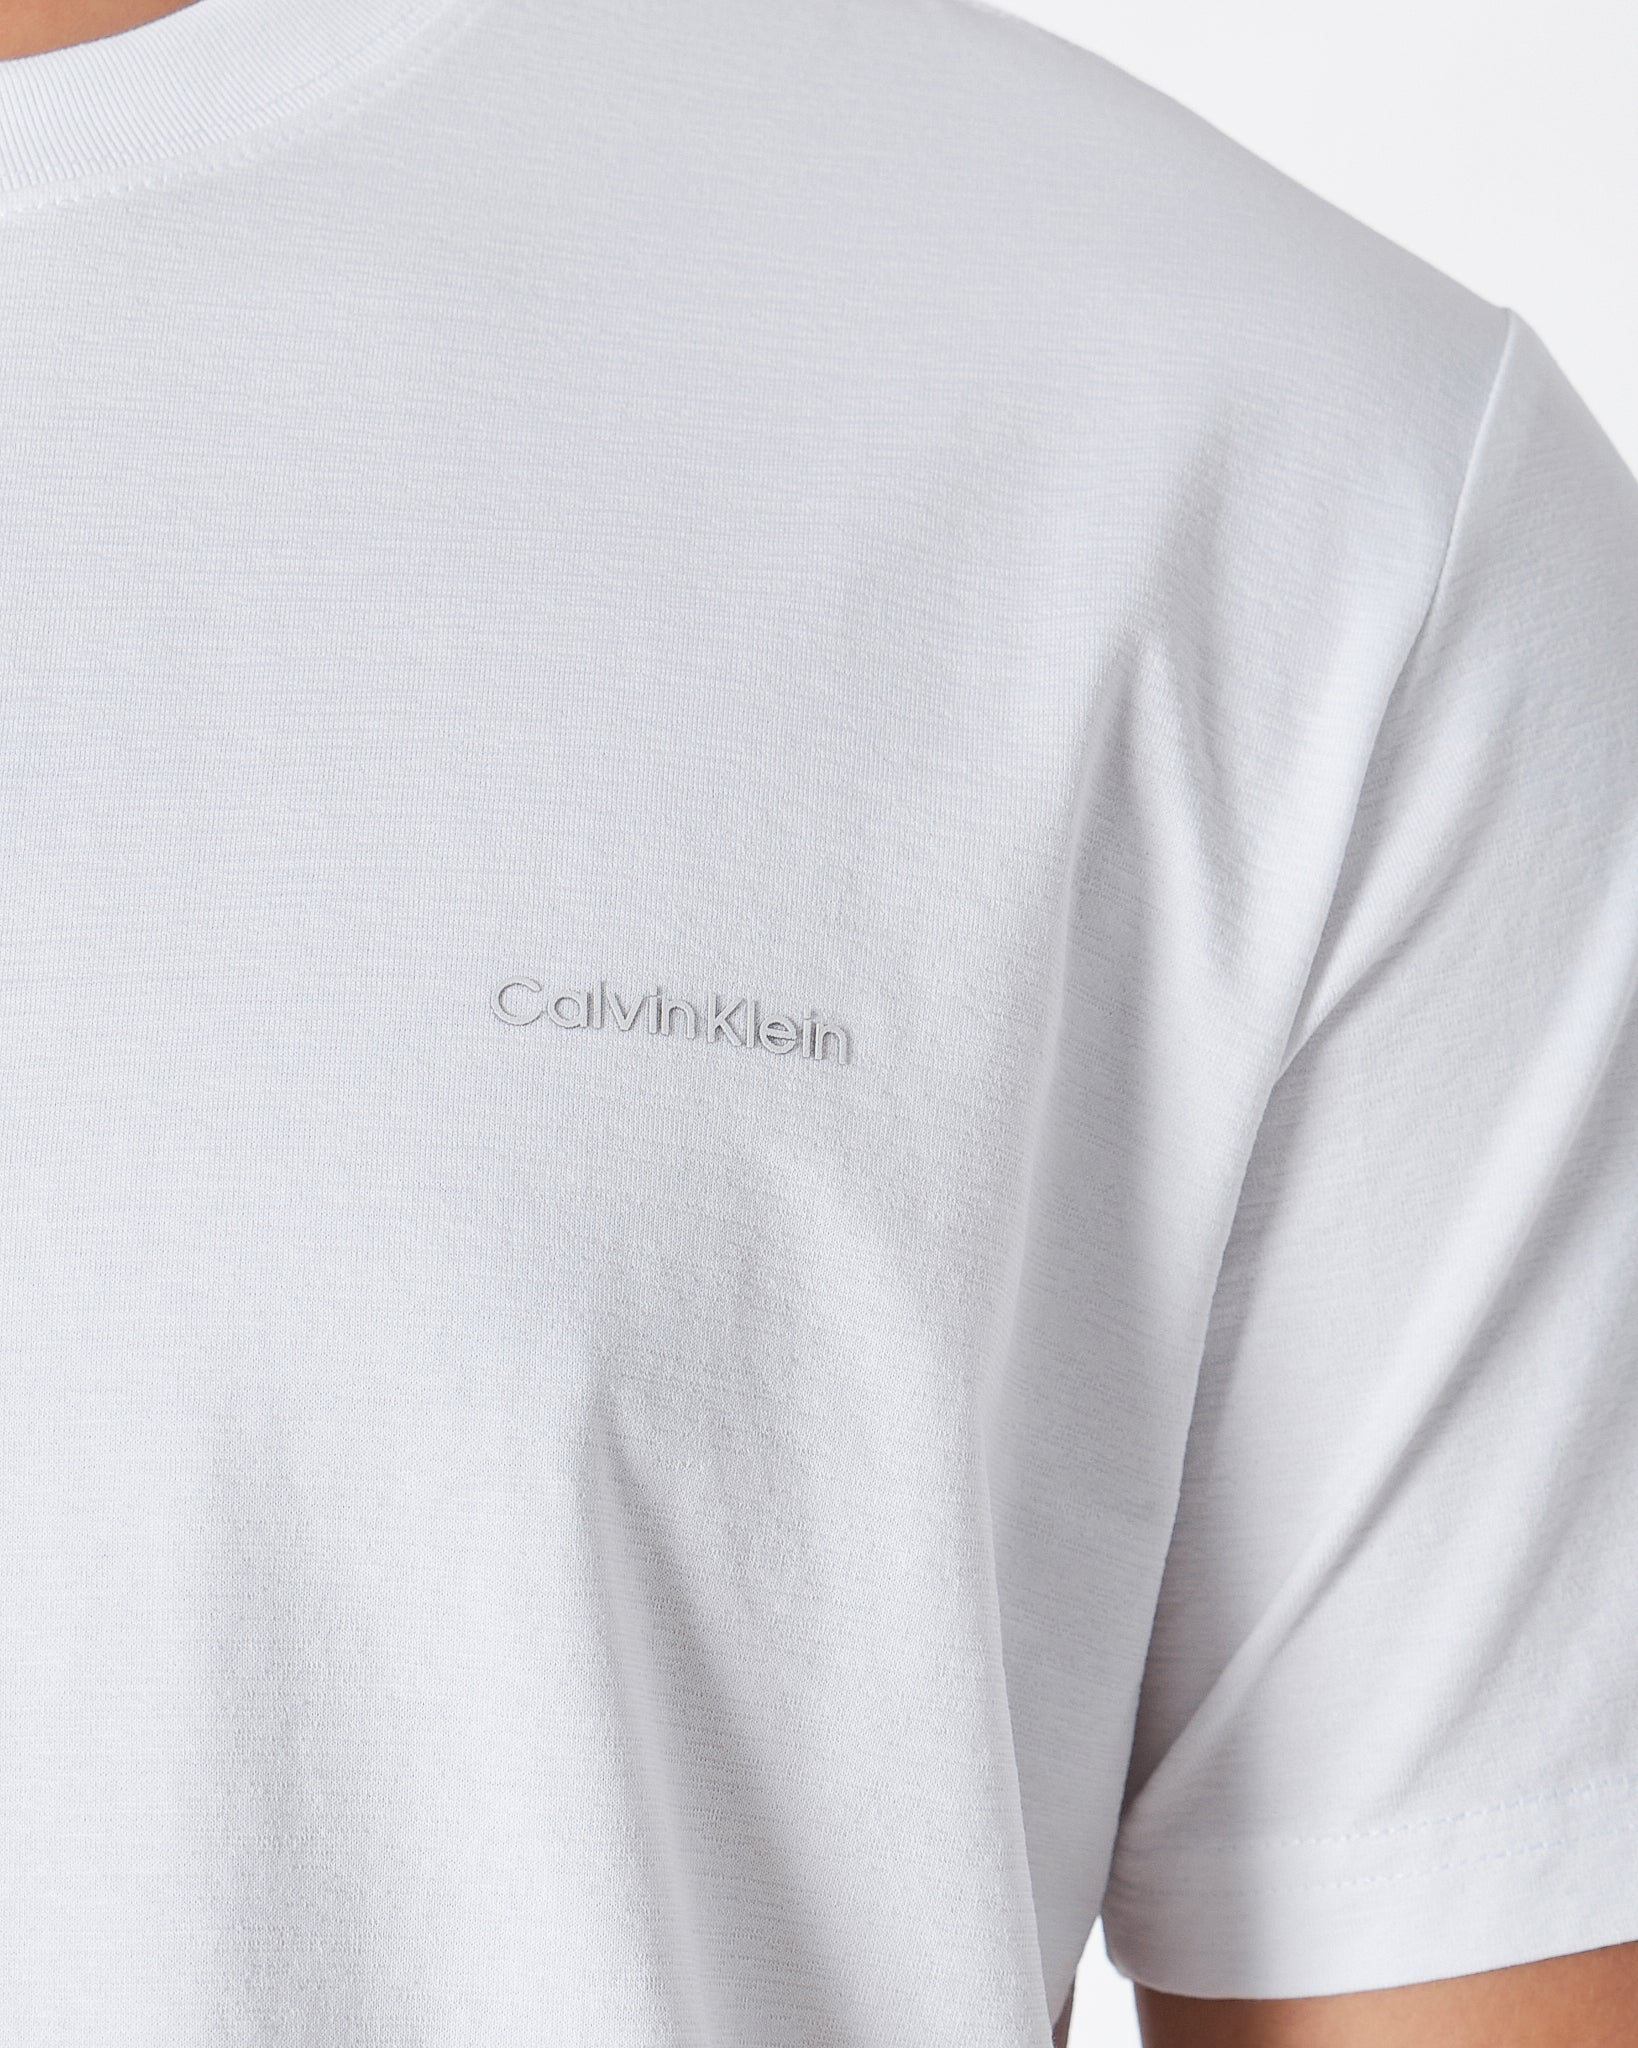 MOI OUTFIT-CK Plain Color Men White T-Shirt 15.90